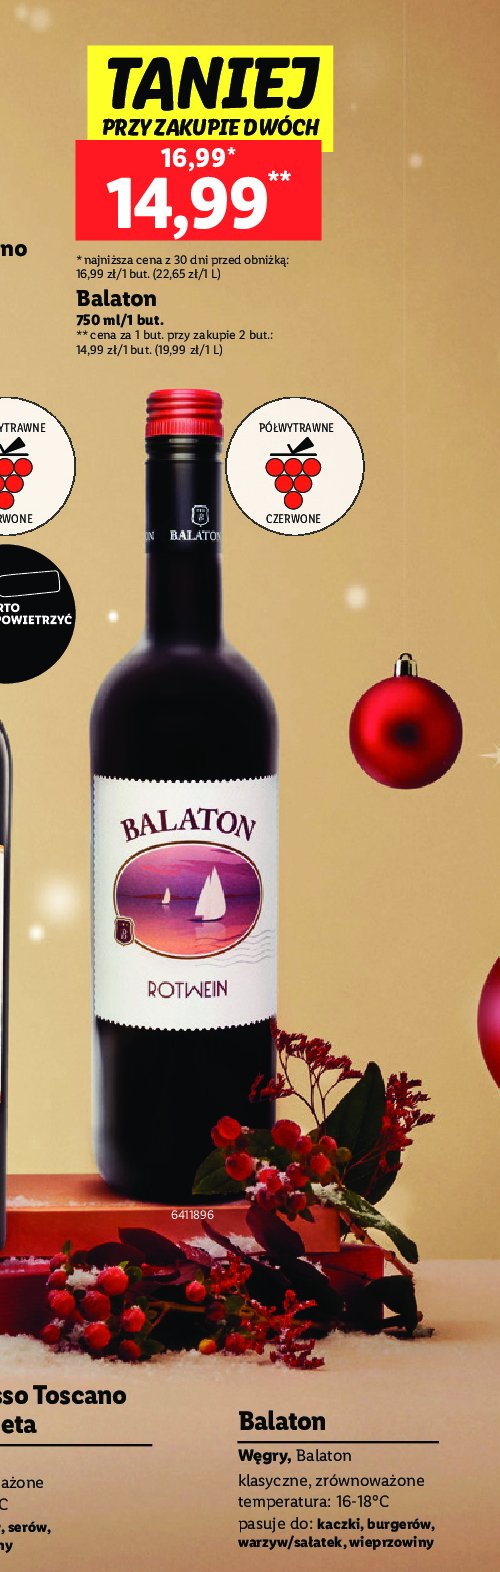 Wino Balaton rotwein promocja